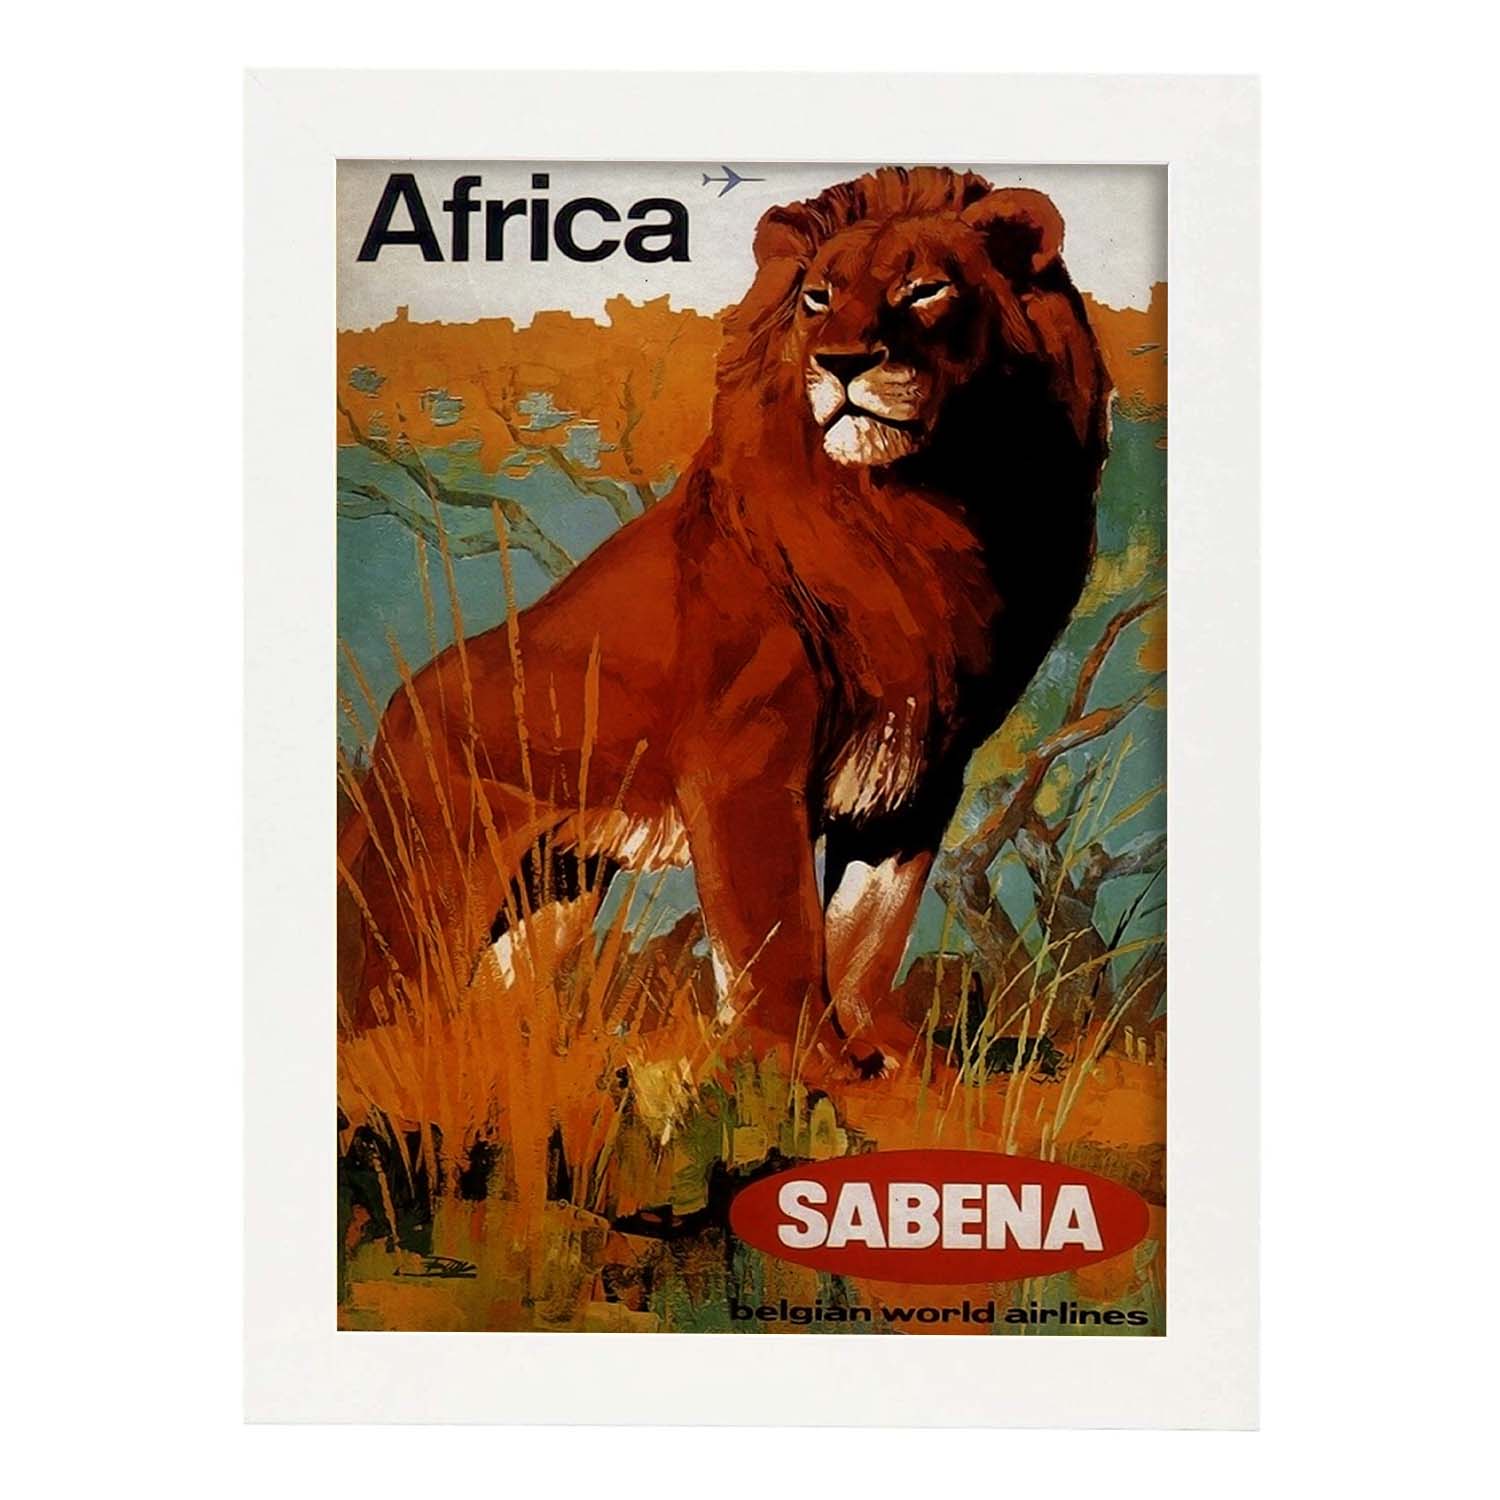 Poster vintage de Africa - Sabena. con imágenes vintage y de publicidad antigua.-Artwork-Nacnic-A4-Marco Blanco-Nacnic Estudio SL